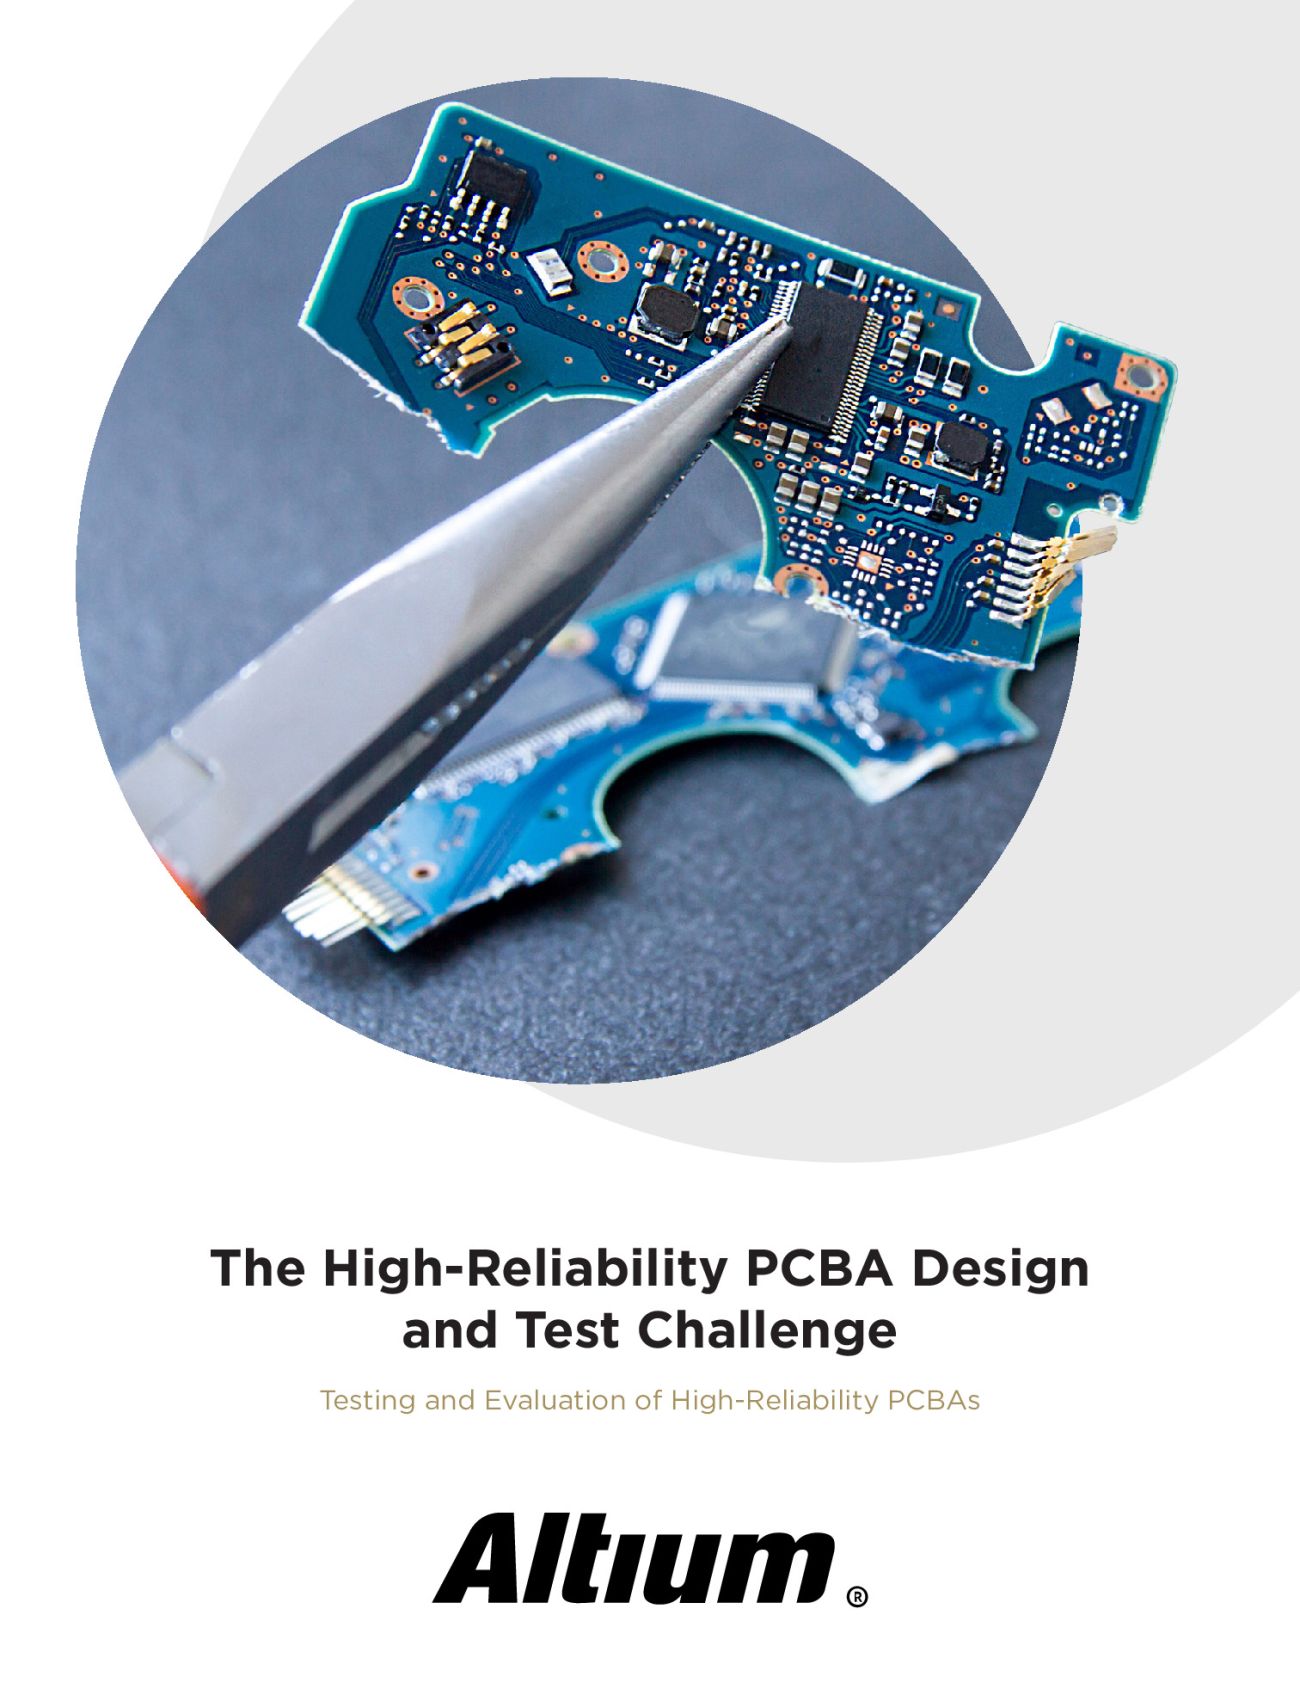 Herausforderungen beim Design und Testen von hochzuverlässigen PCBAs